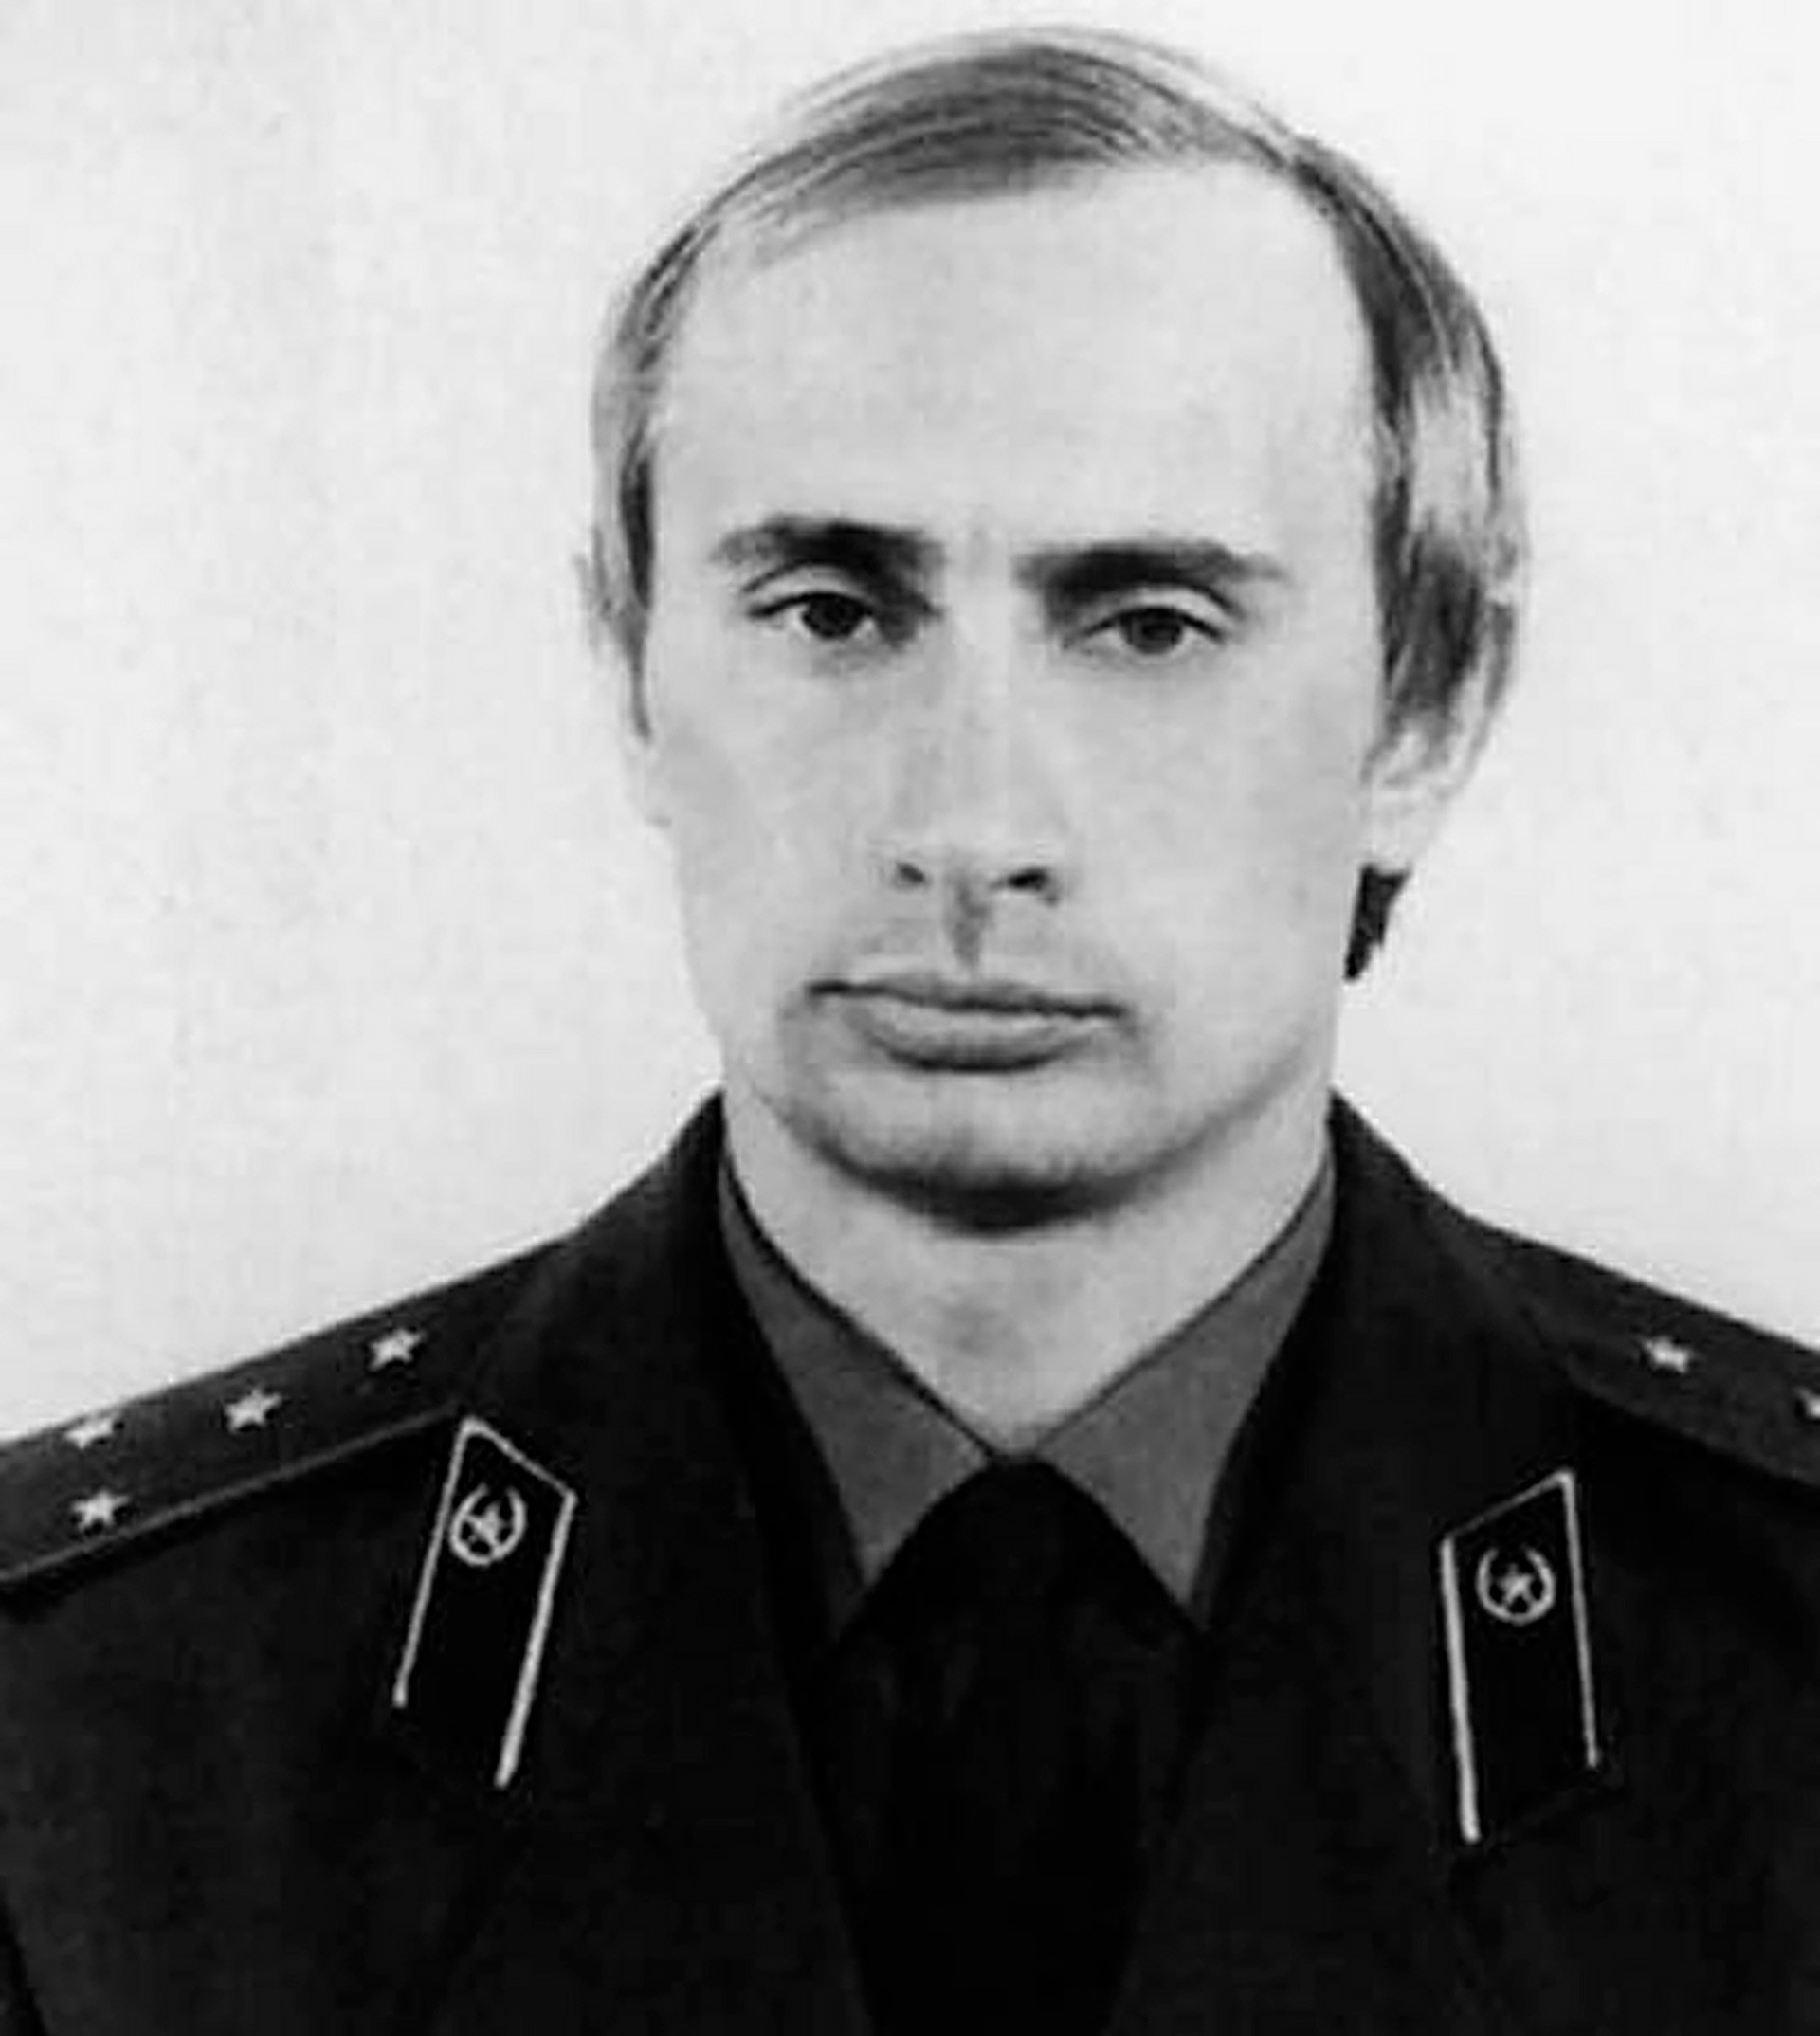 Putin dengan seragam KGB, sekitar tahun 1980.